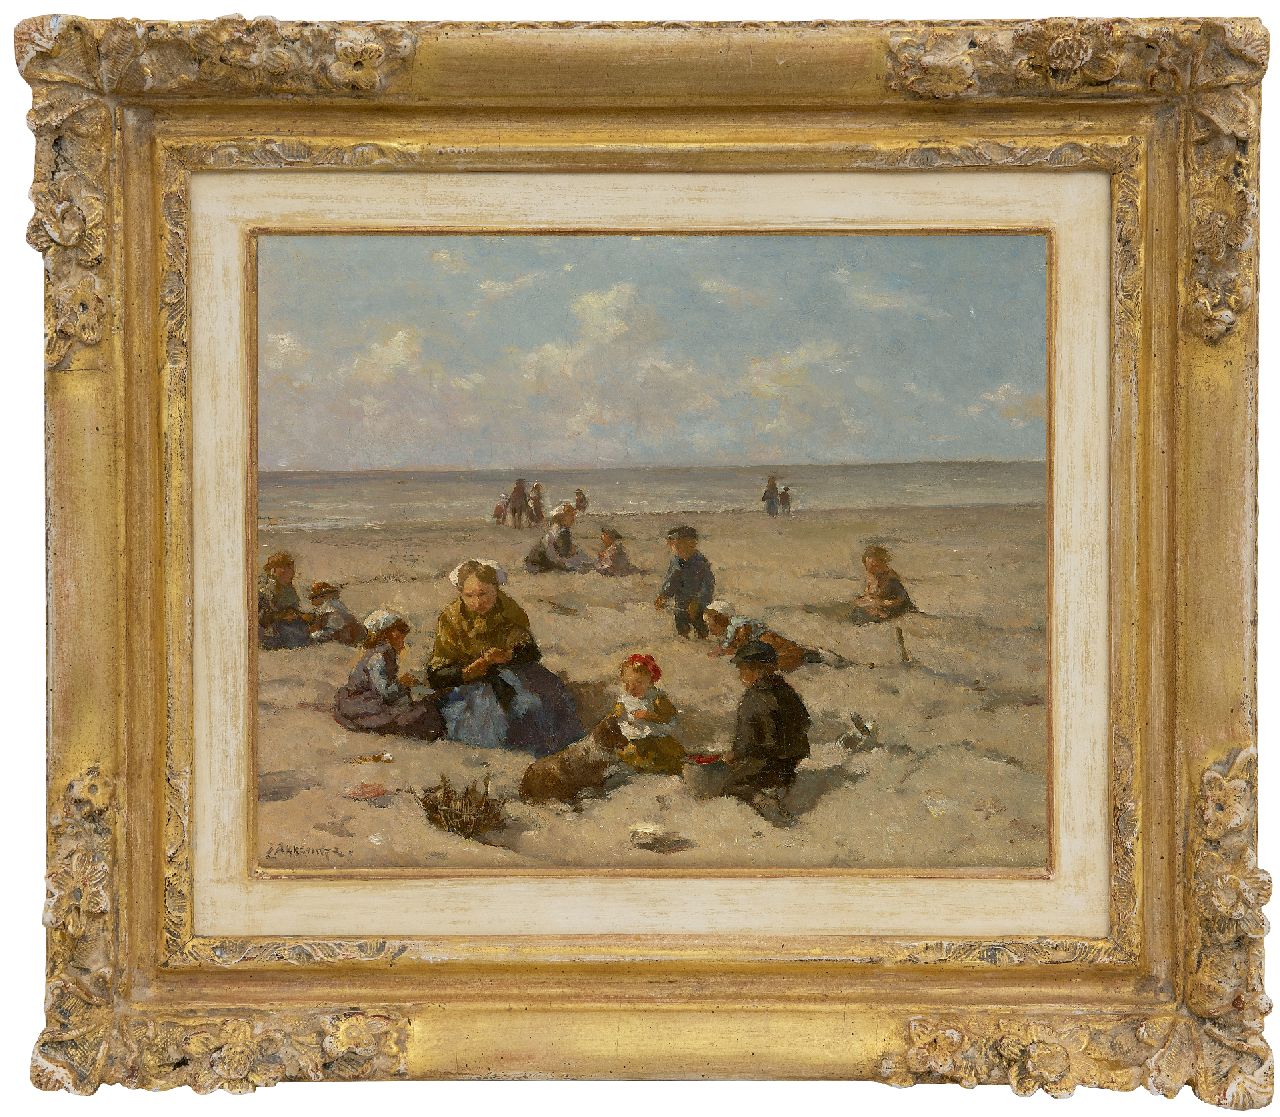 Akkeringa J.E.H.  | 'Johannes Evert' Hendrik Akkeringa, Fun at the beach, oil on canvas 26.7 x 33.0 cm, signed l.l. and on the reverse and dated 1937 on the reverse